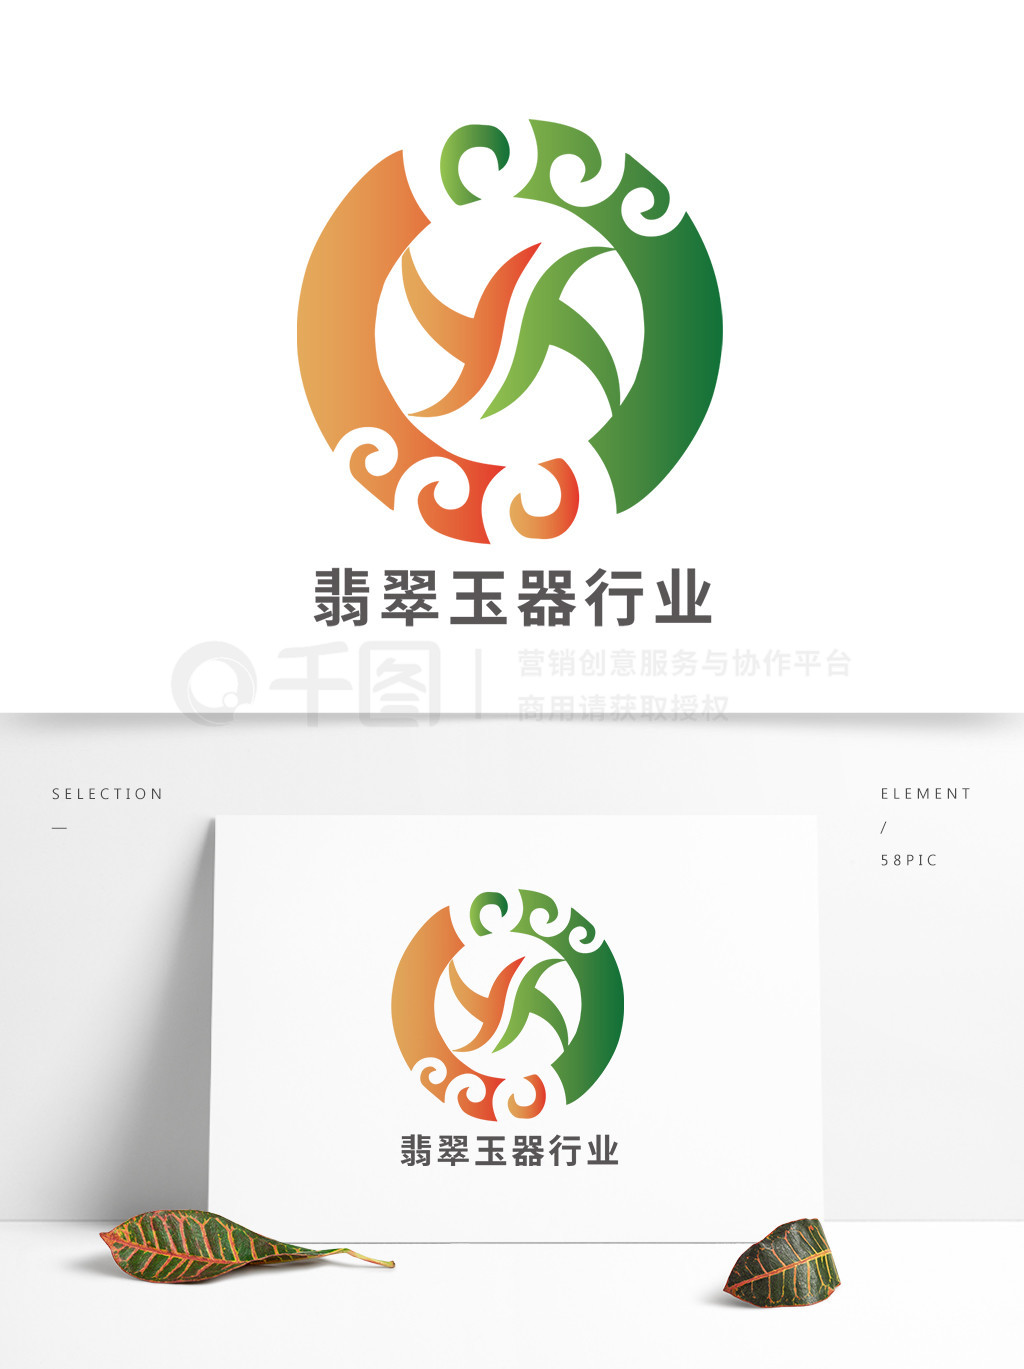 翡翠玉器珠宝行业logo矢量图免费下载_ai格式_2000像素_编号40343907